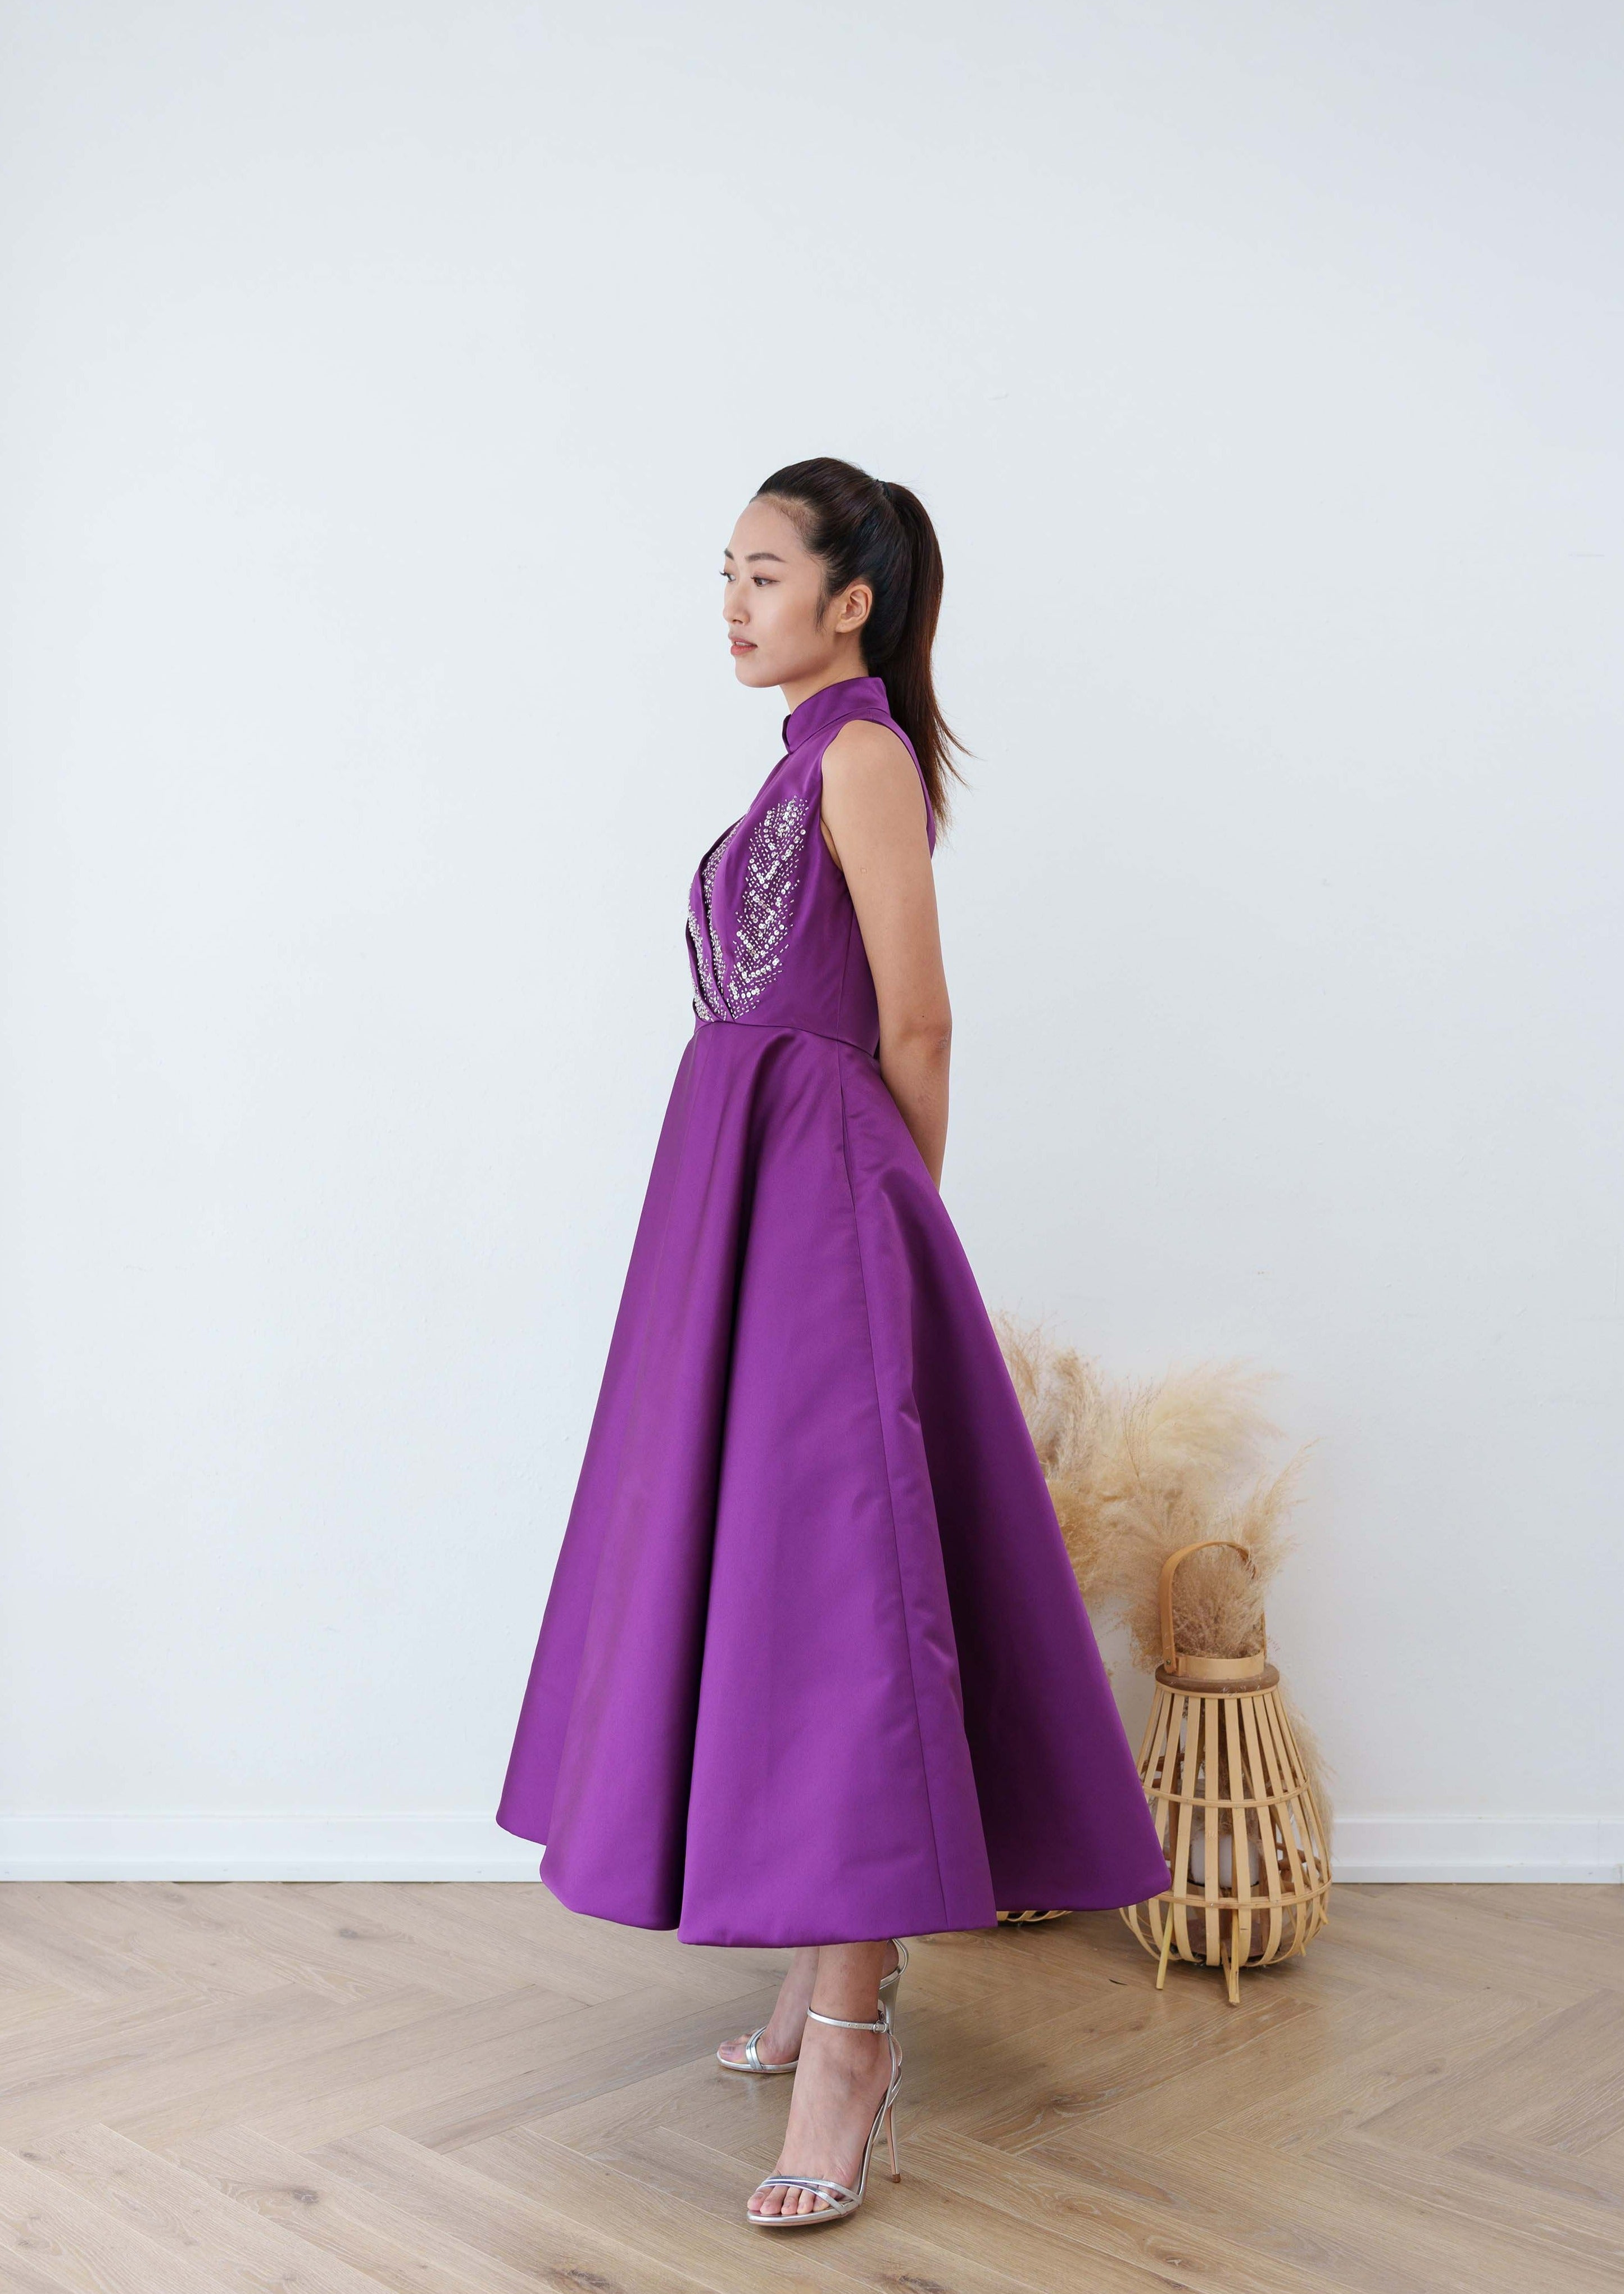 紫藤綴飾公主迷笛旗袍